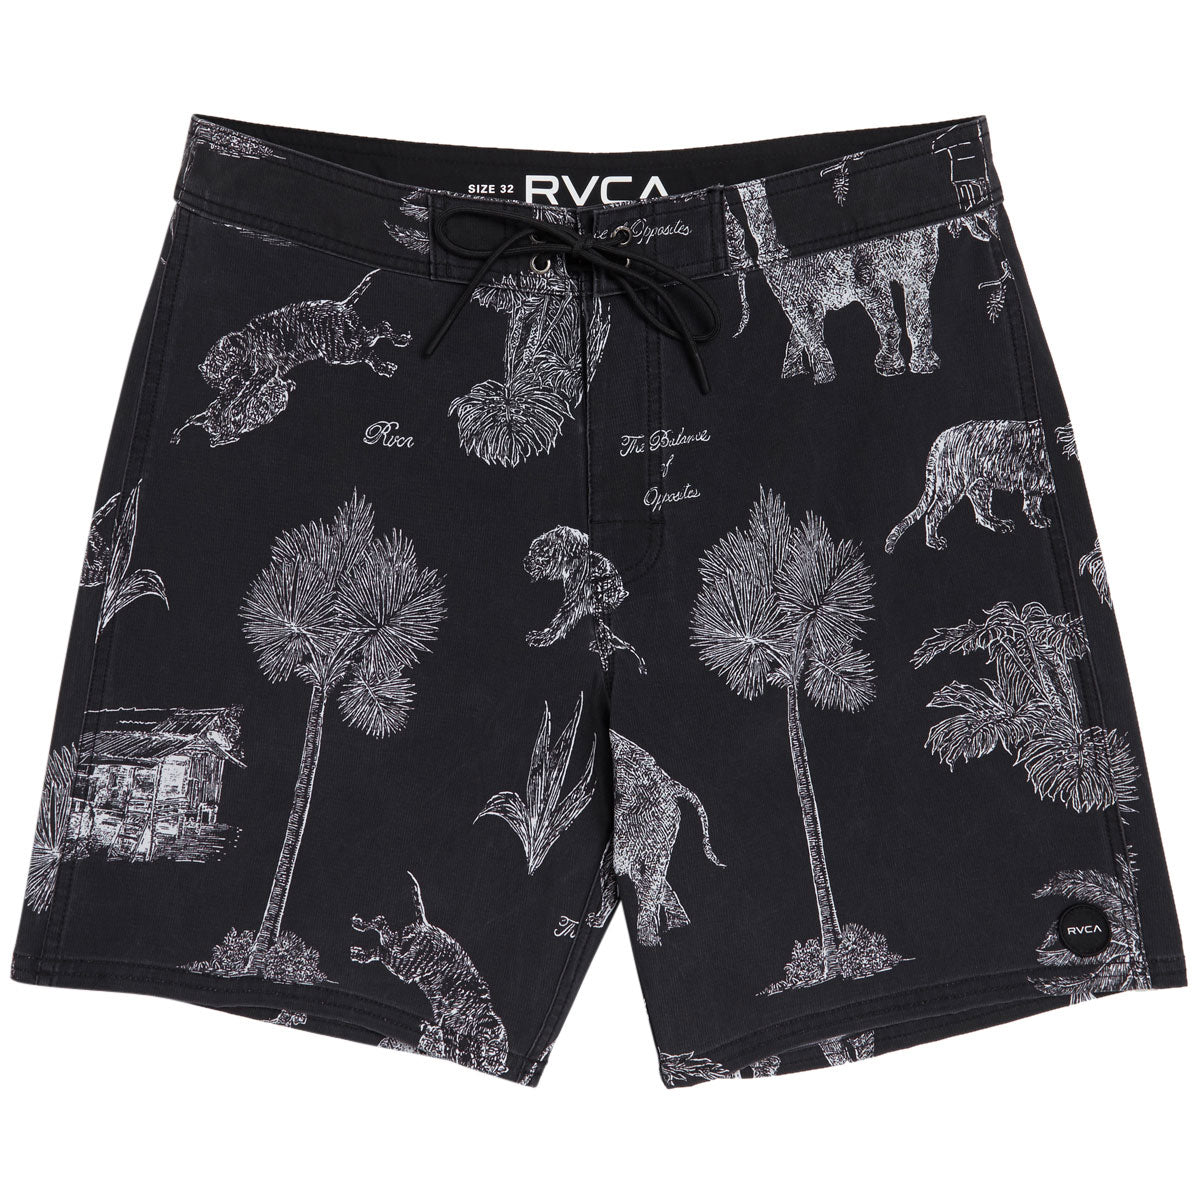 RVCA Va Pigment Board Shorts - Black/White image 1